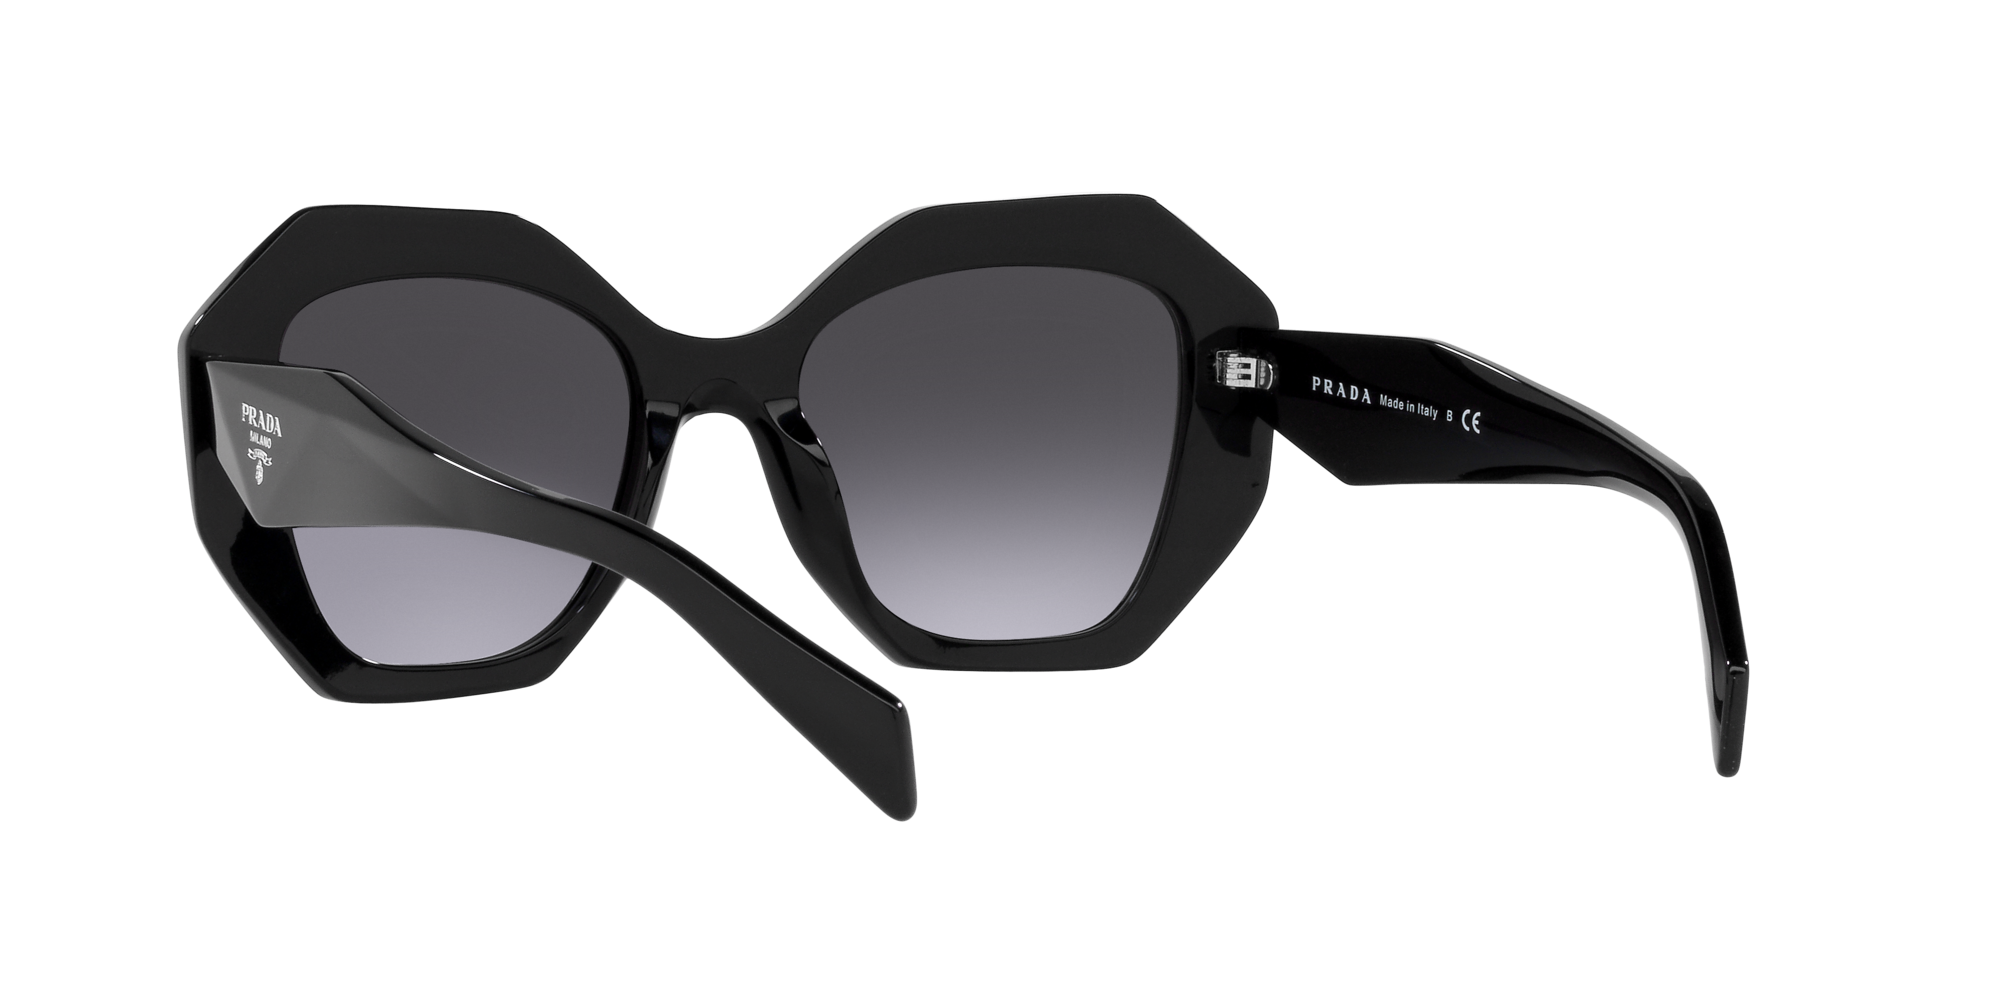 Prada Sunglasses - Black - Geometric